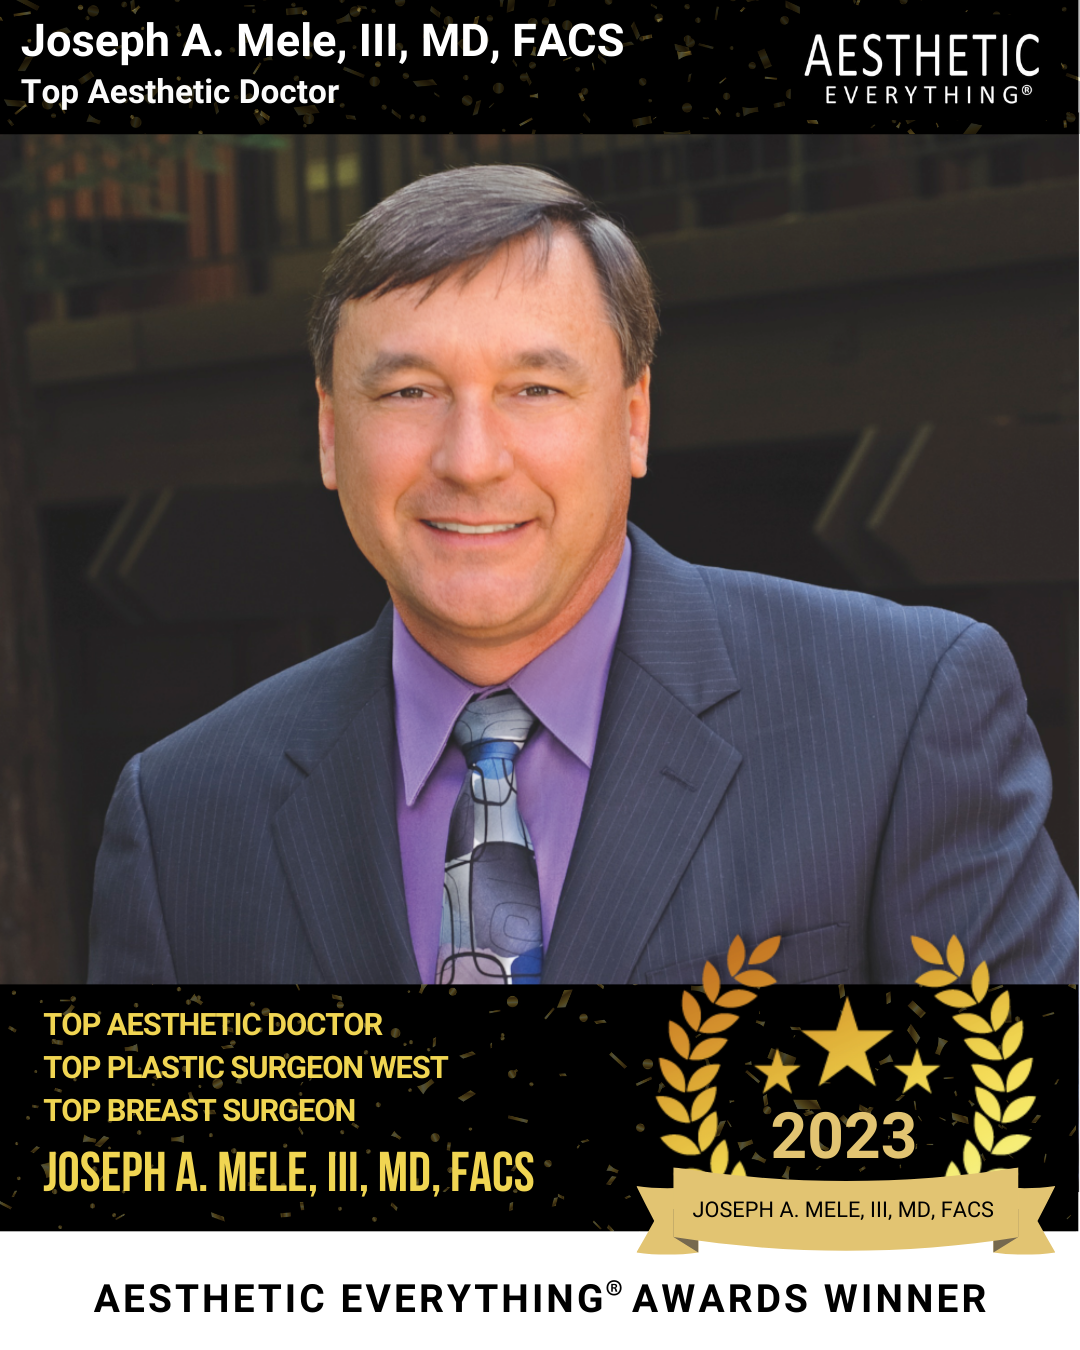 2023 Aesthetic Everything Award Winner Dr. Joseph A. Mele